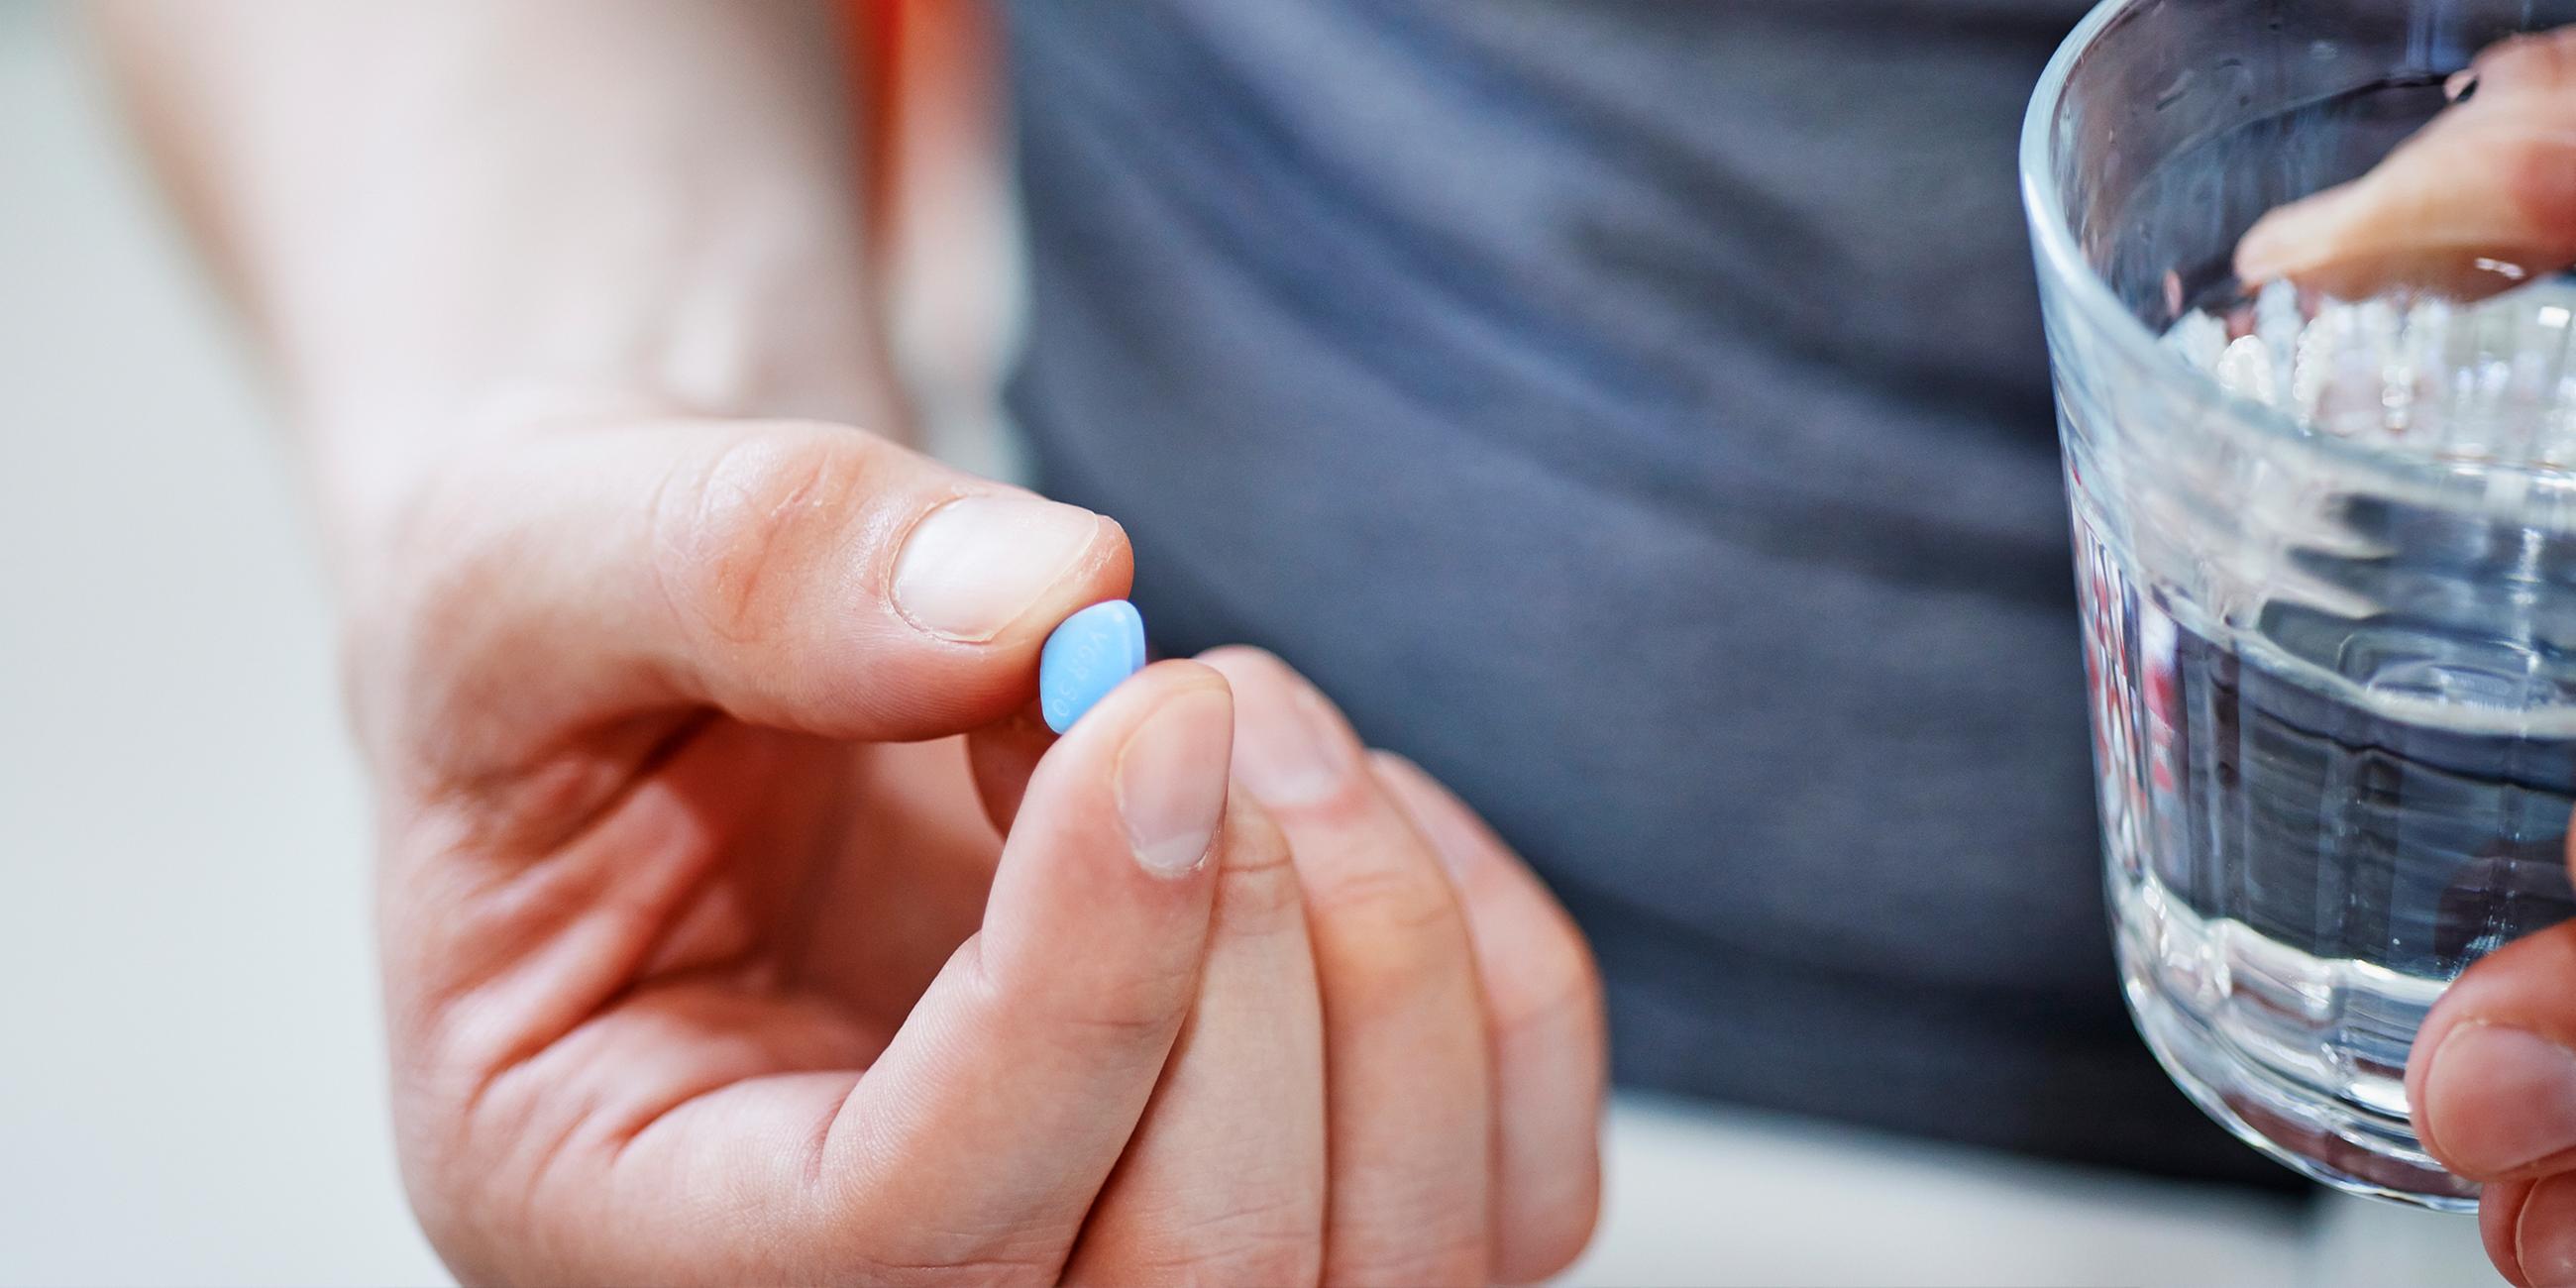 Typical: Ein Mann hält eine Viagra Tablette in der Hand